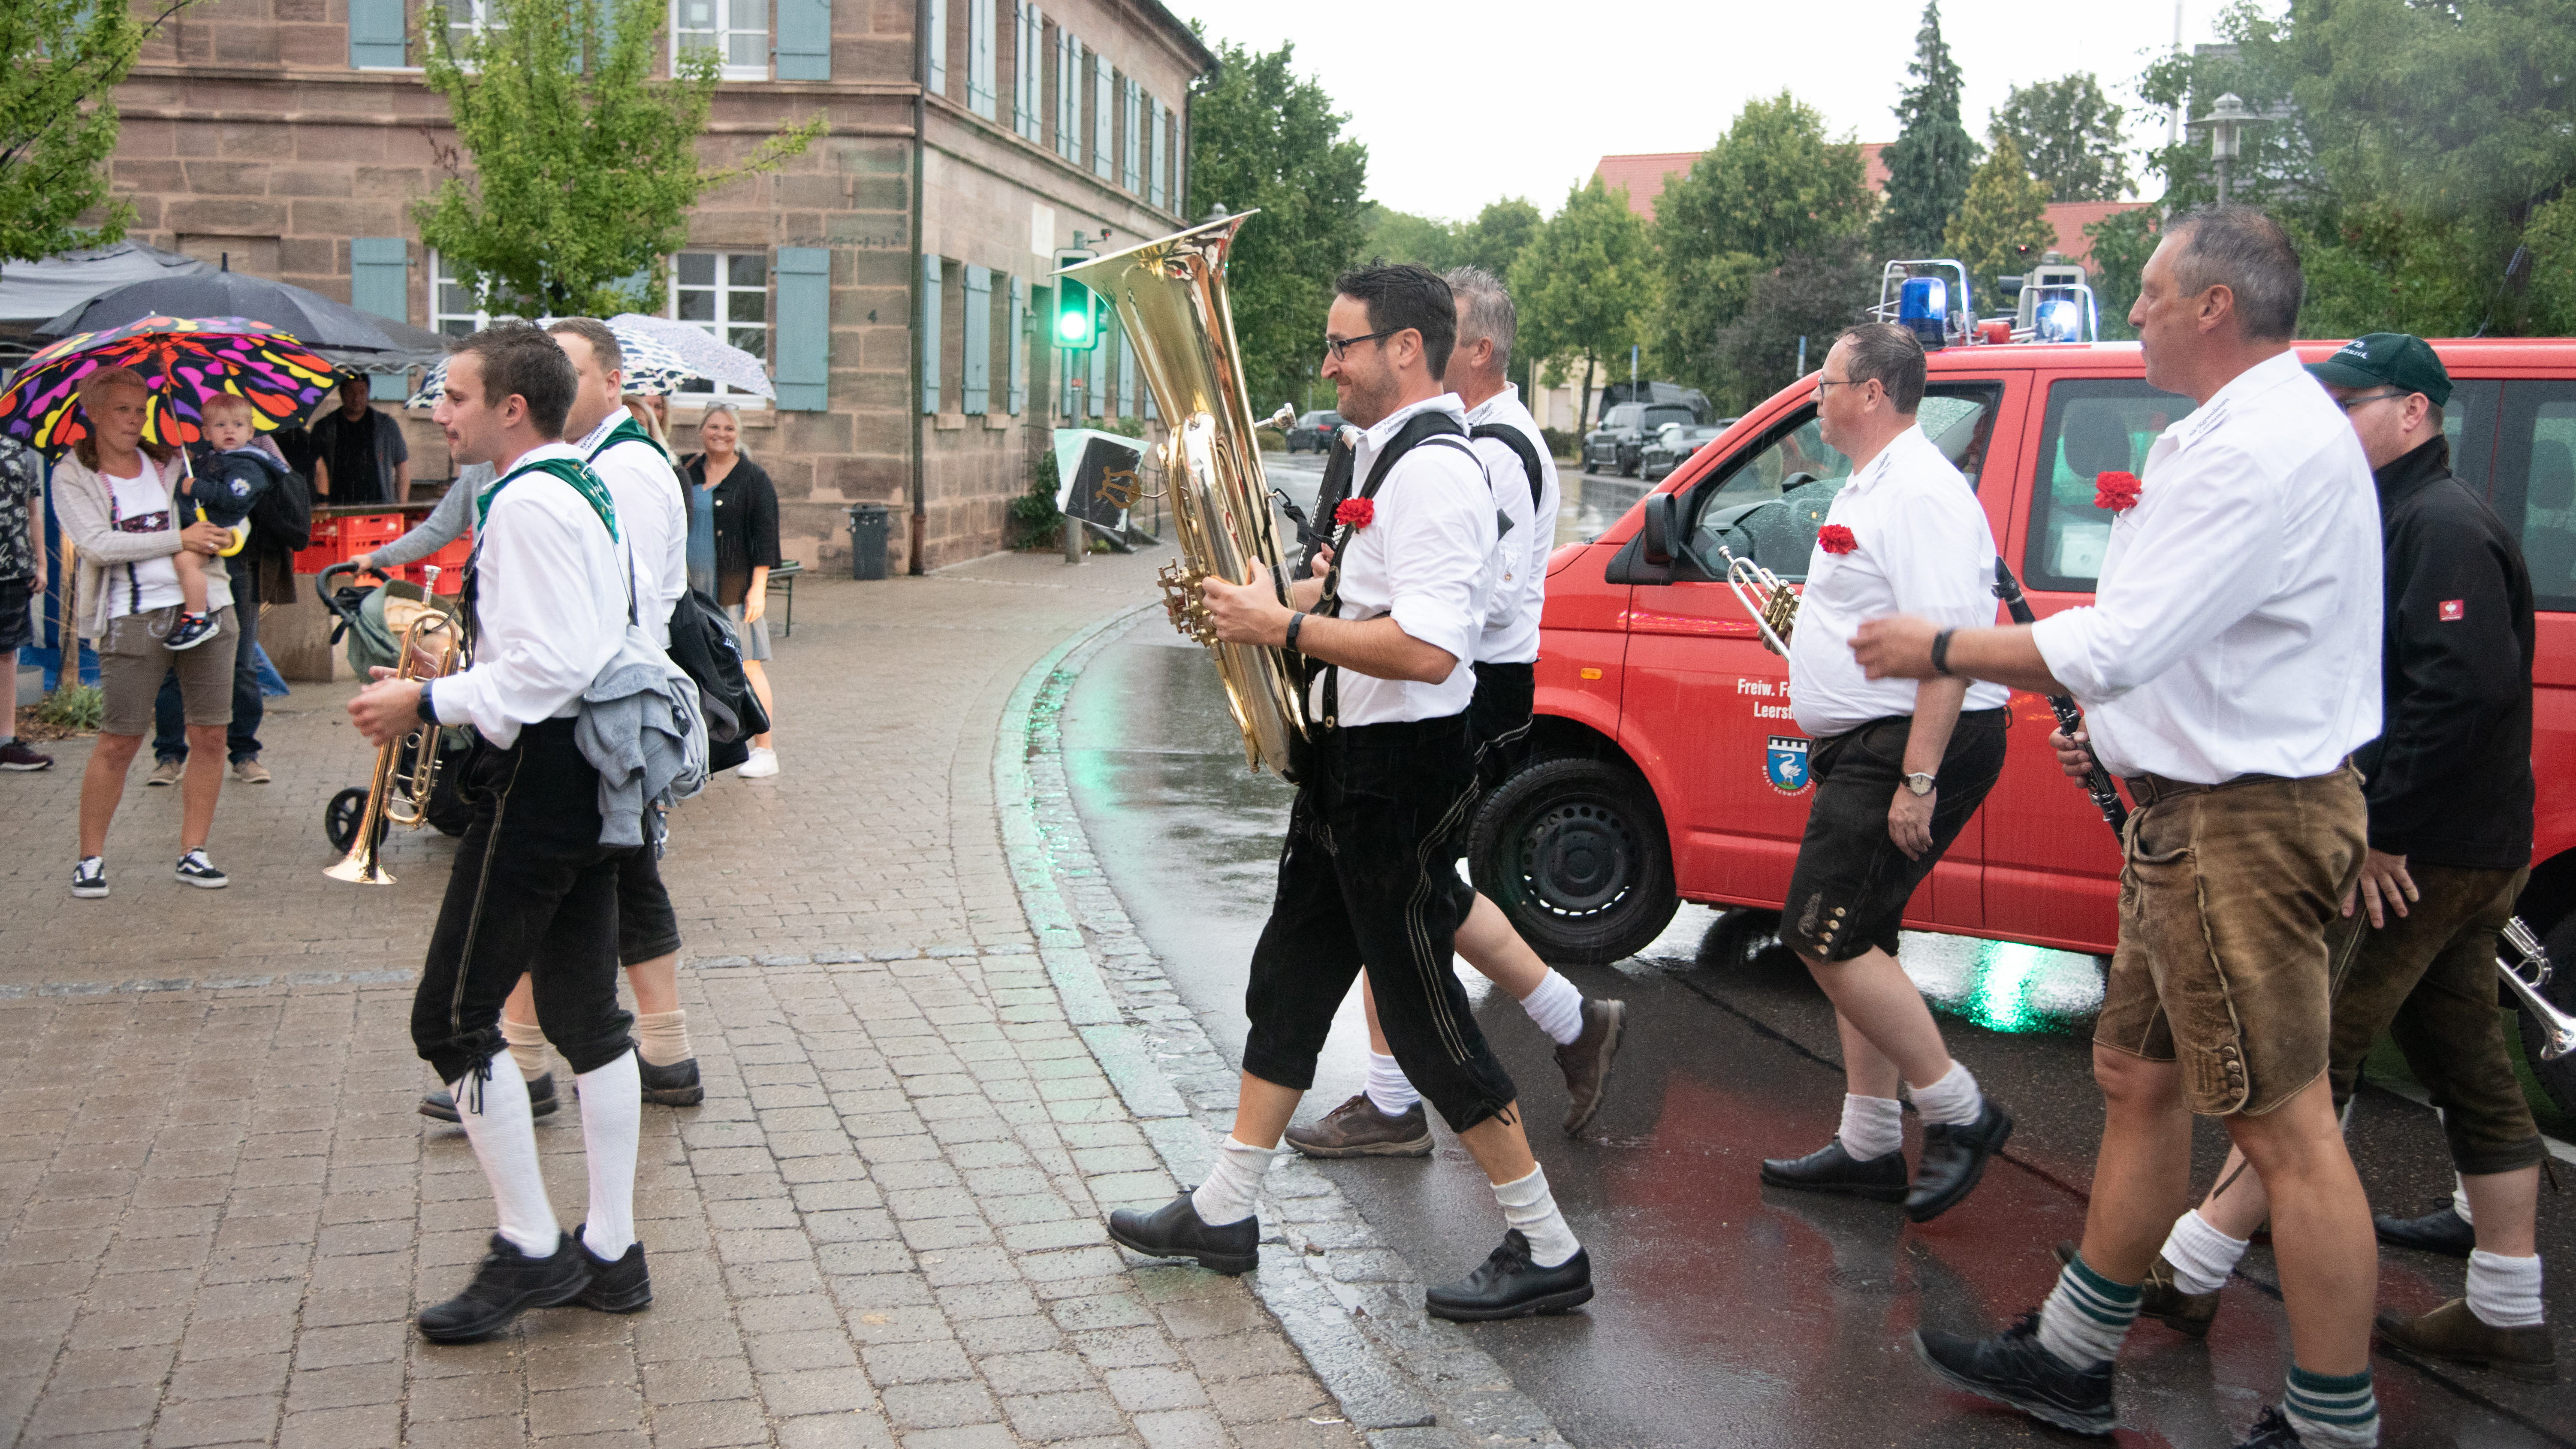  Männliche Mitglieder einer Blaskapelle, in Tracht gekleidet, gehen über die Straße. 